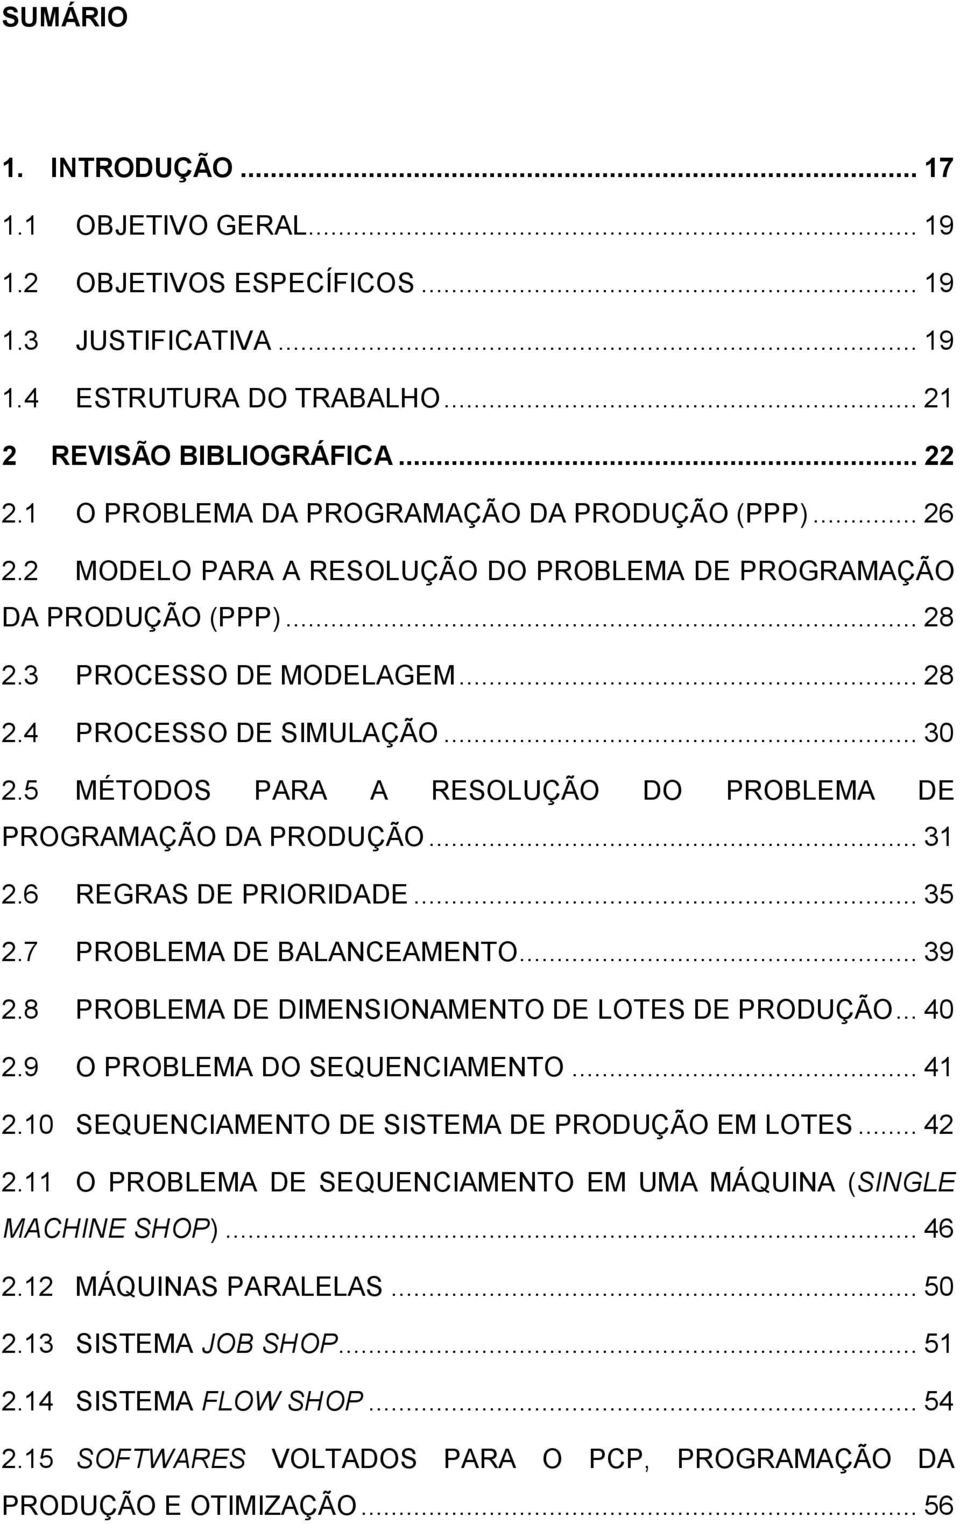 5 MÉTODOS PARA A RESOLUÇÃO DO PROBLEMA DE PROGRAMAÇÃO DA PRODUÇÃO... 31 2.6 2.7 2.8 2.9 2.10 REGRAS DE PRIORIDADE... 35 PROBLEMA DE BALANCEAMENTO... 39 PROBLEMA DE DIMENSIONAMENTO DE LOTES DE PRODUÇÃO.